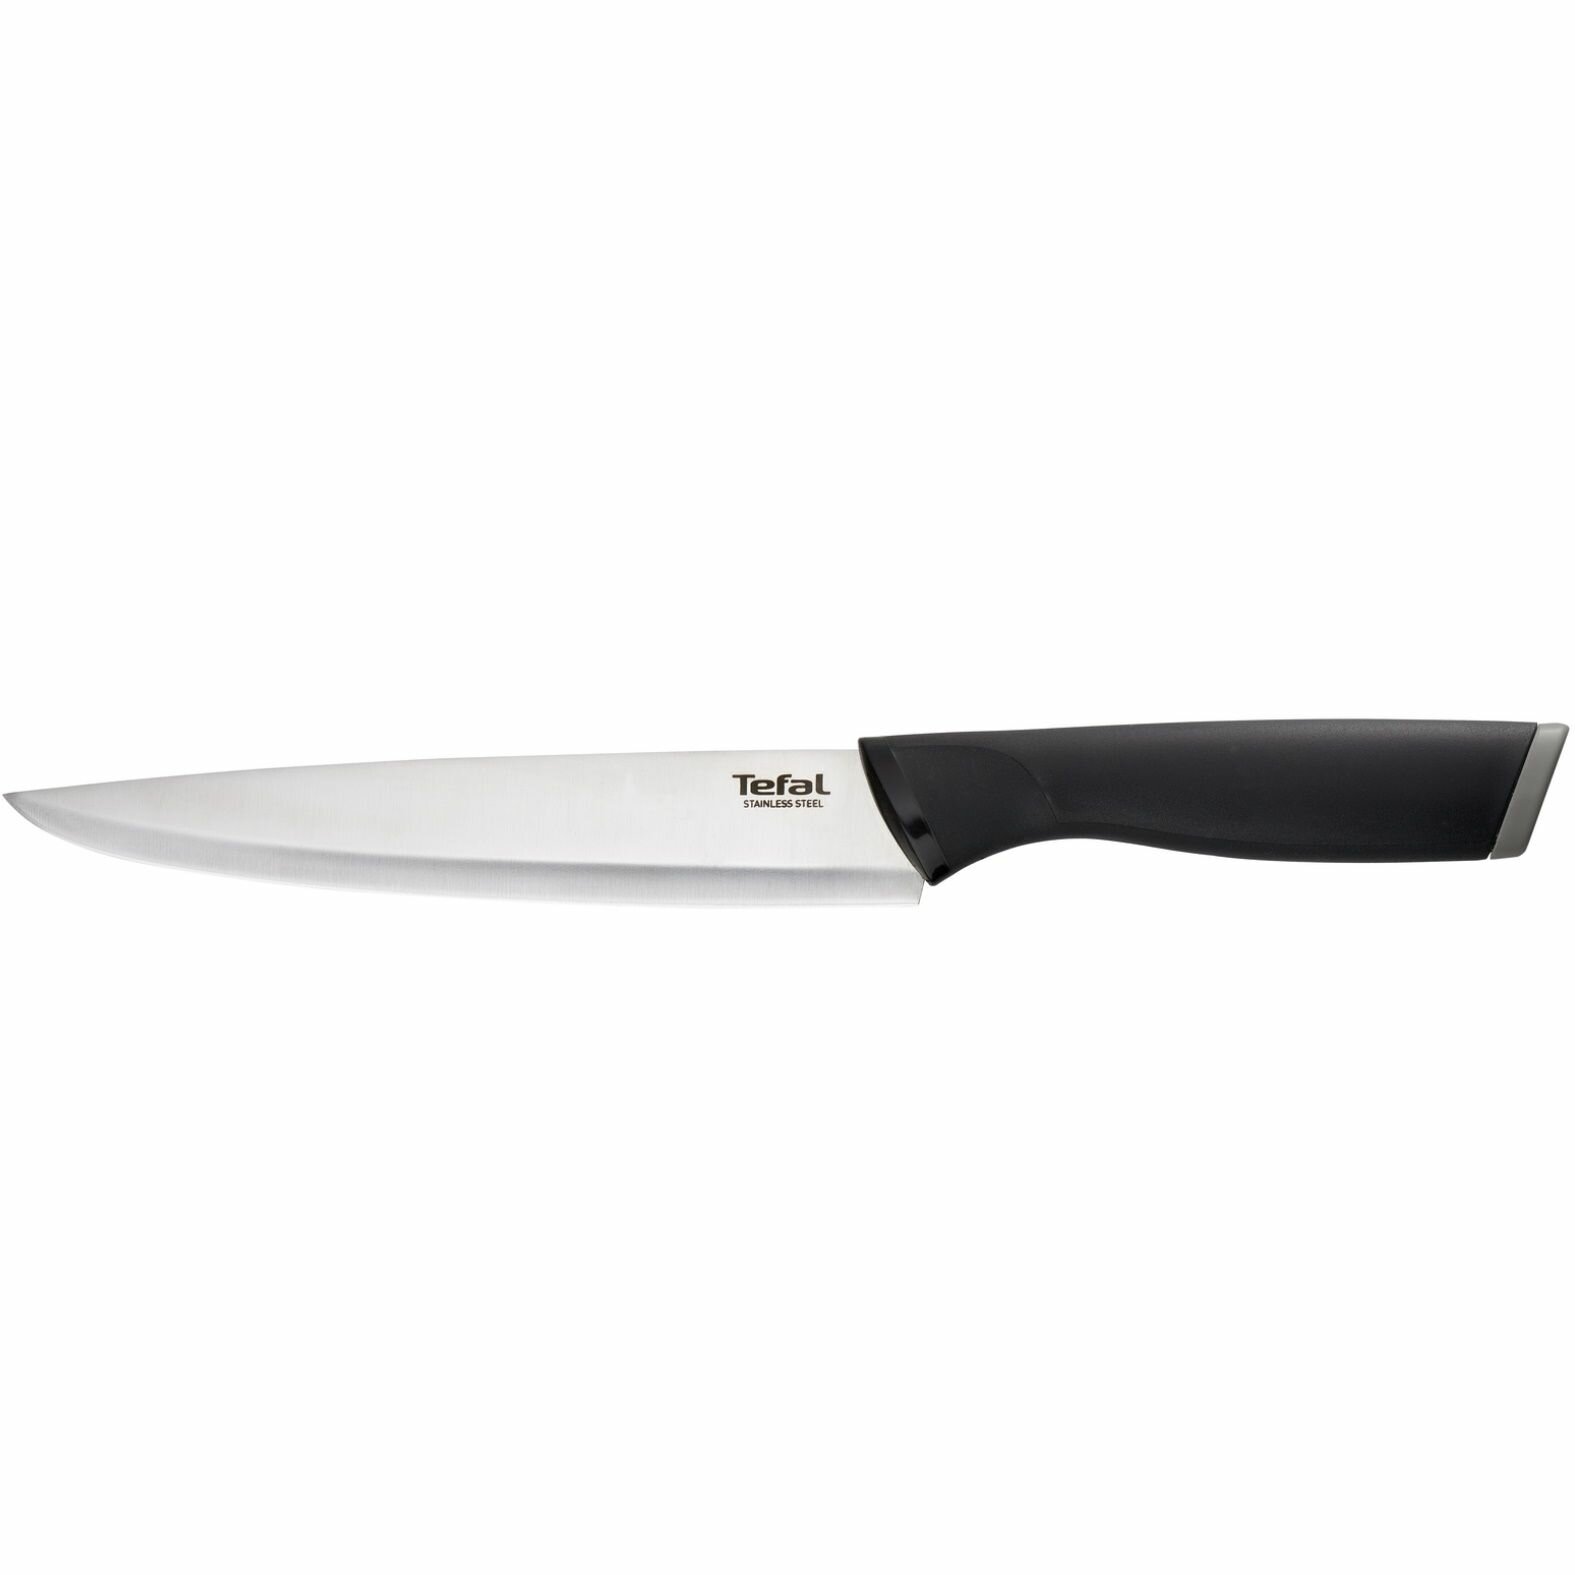 Набор ножей Tefal Essential K221S255, 2 шт, 12/20 см, лезвие из нержавеющей стали